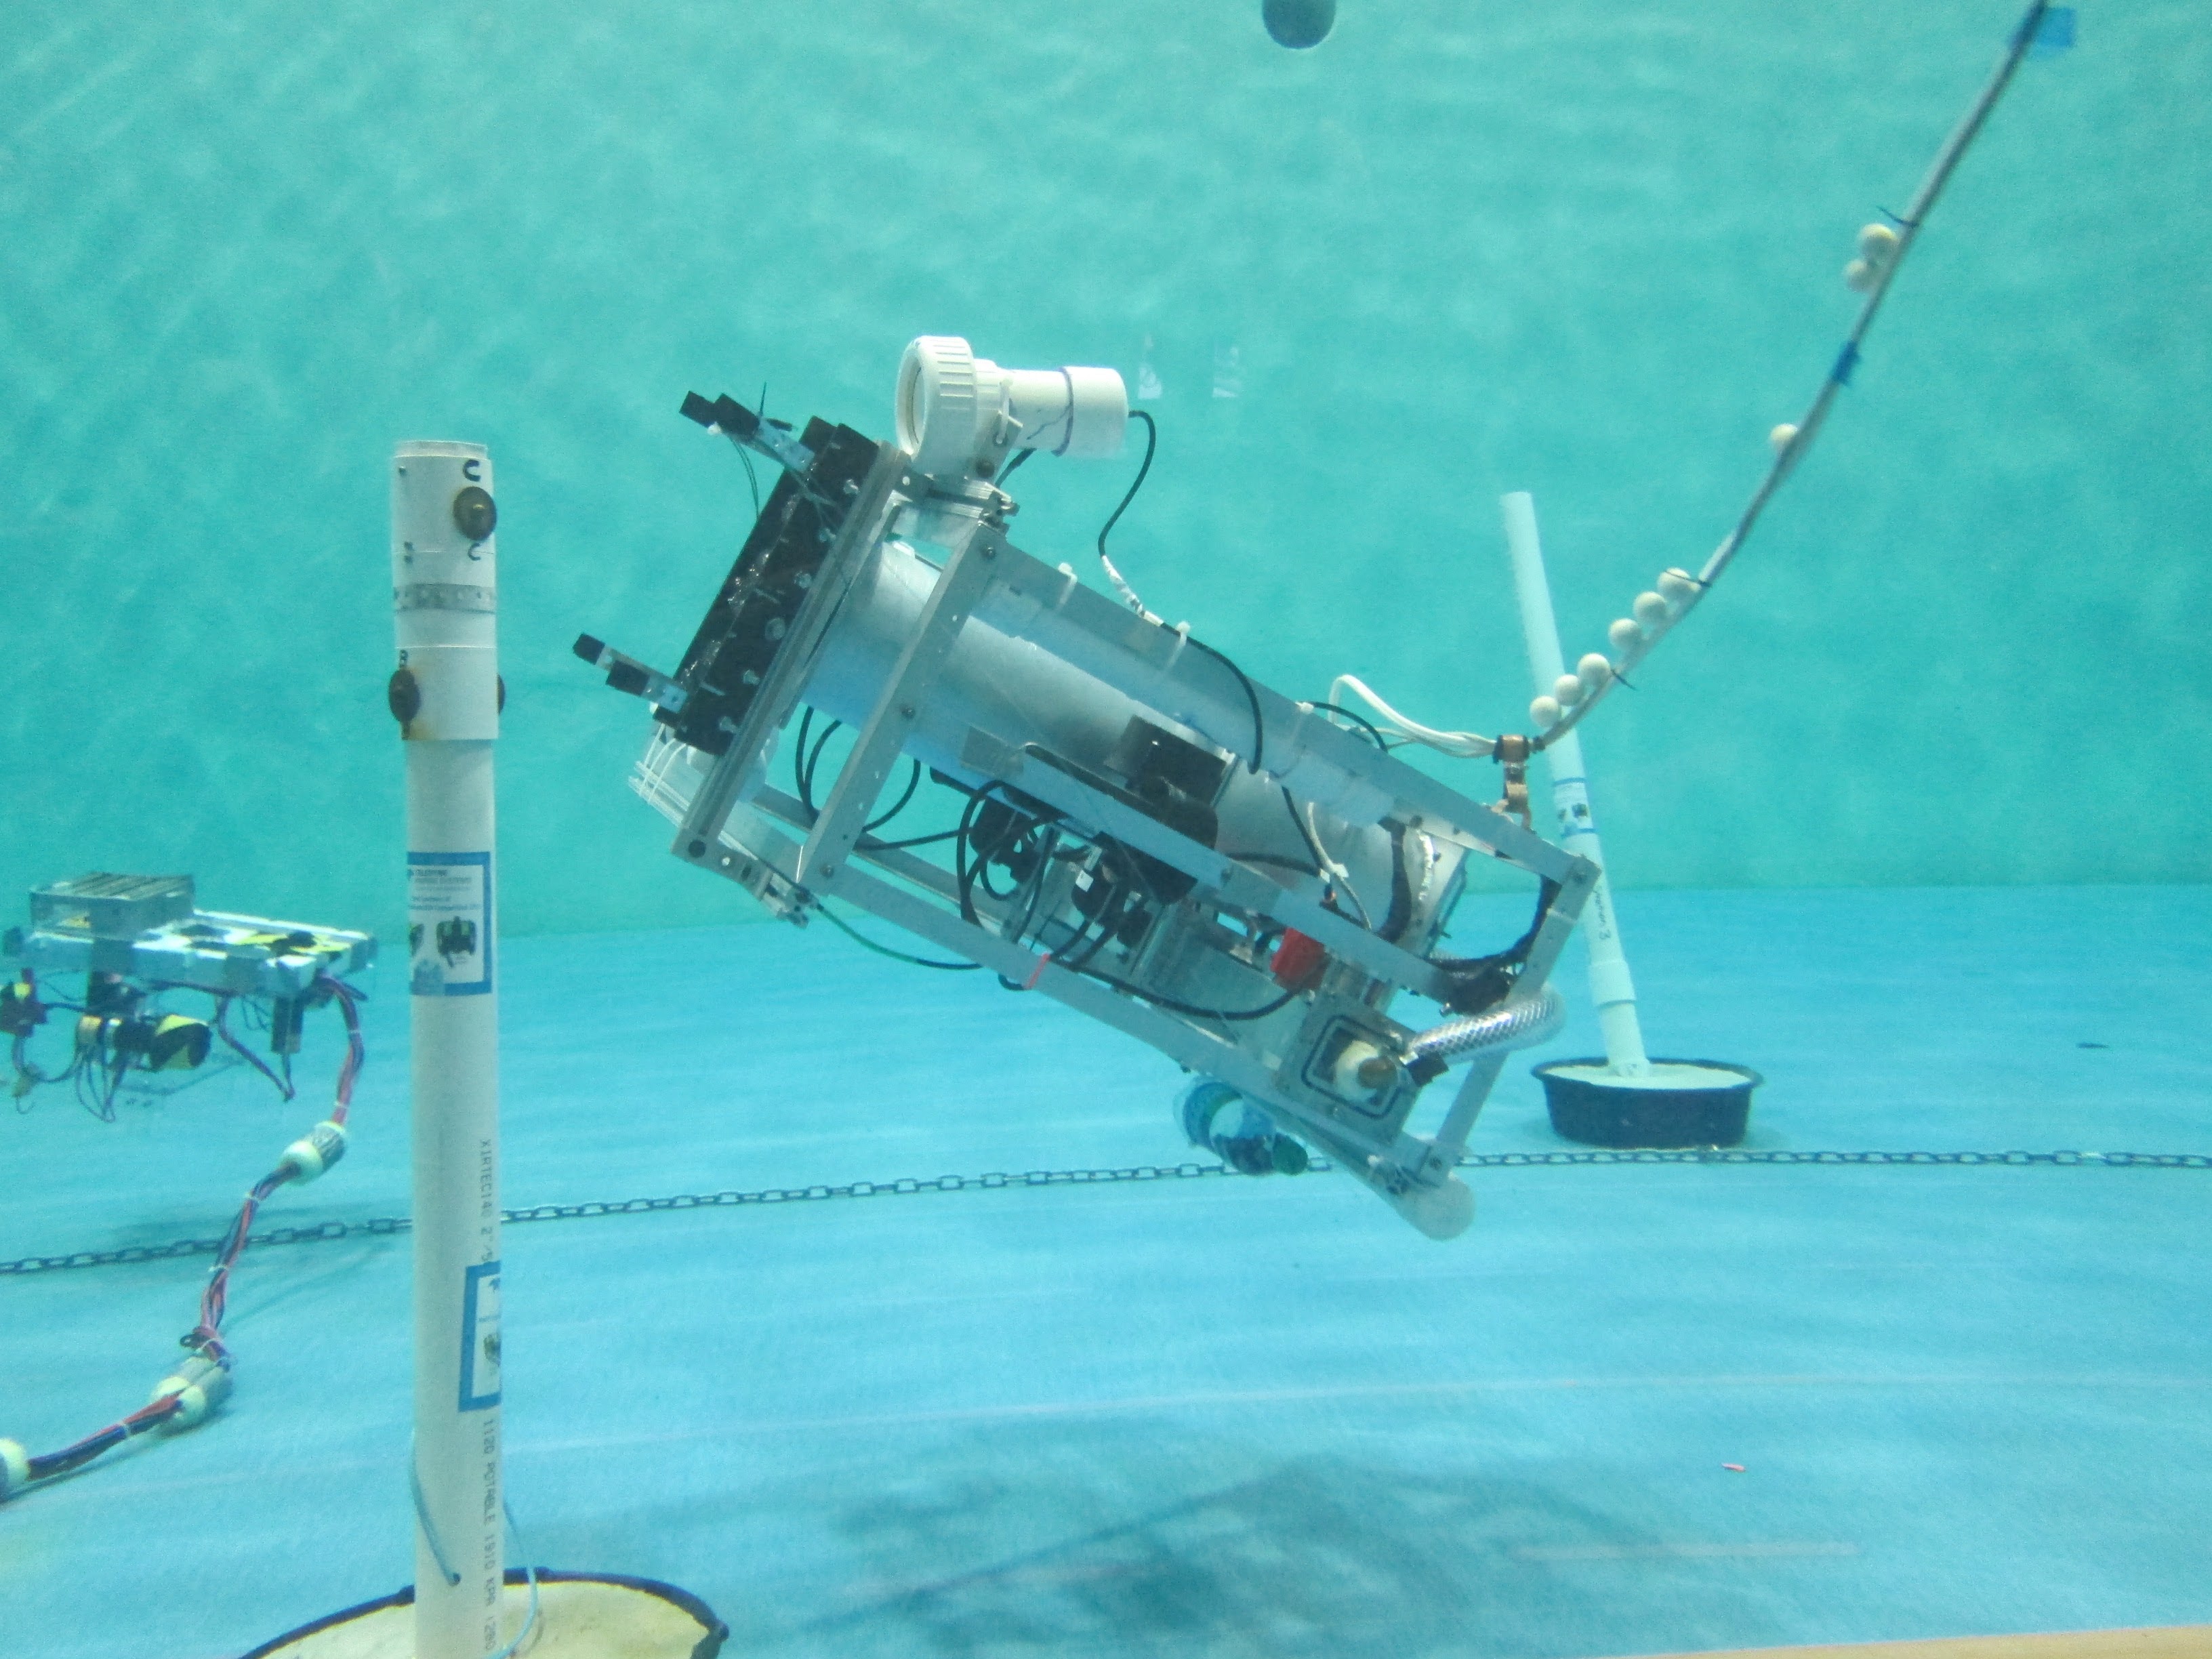 Cal Poly Underwater Robotics